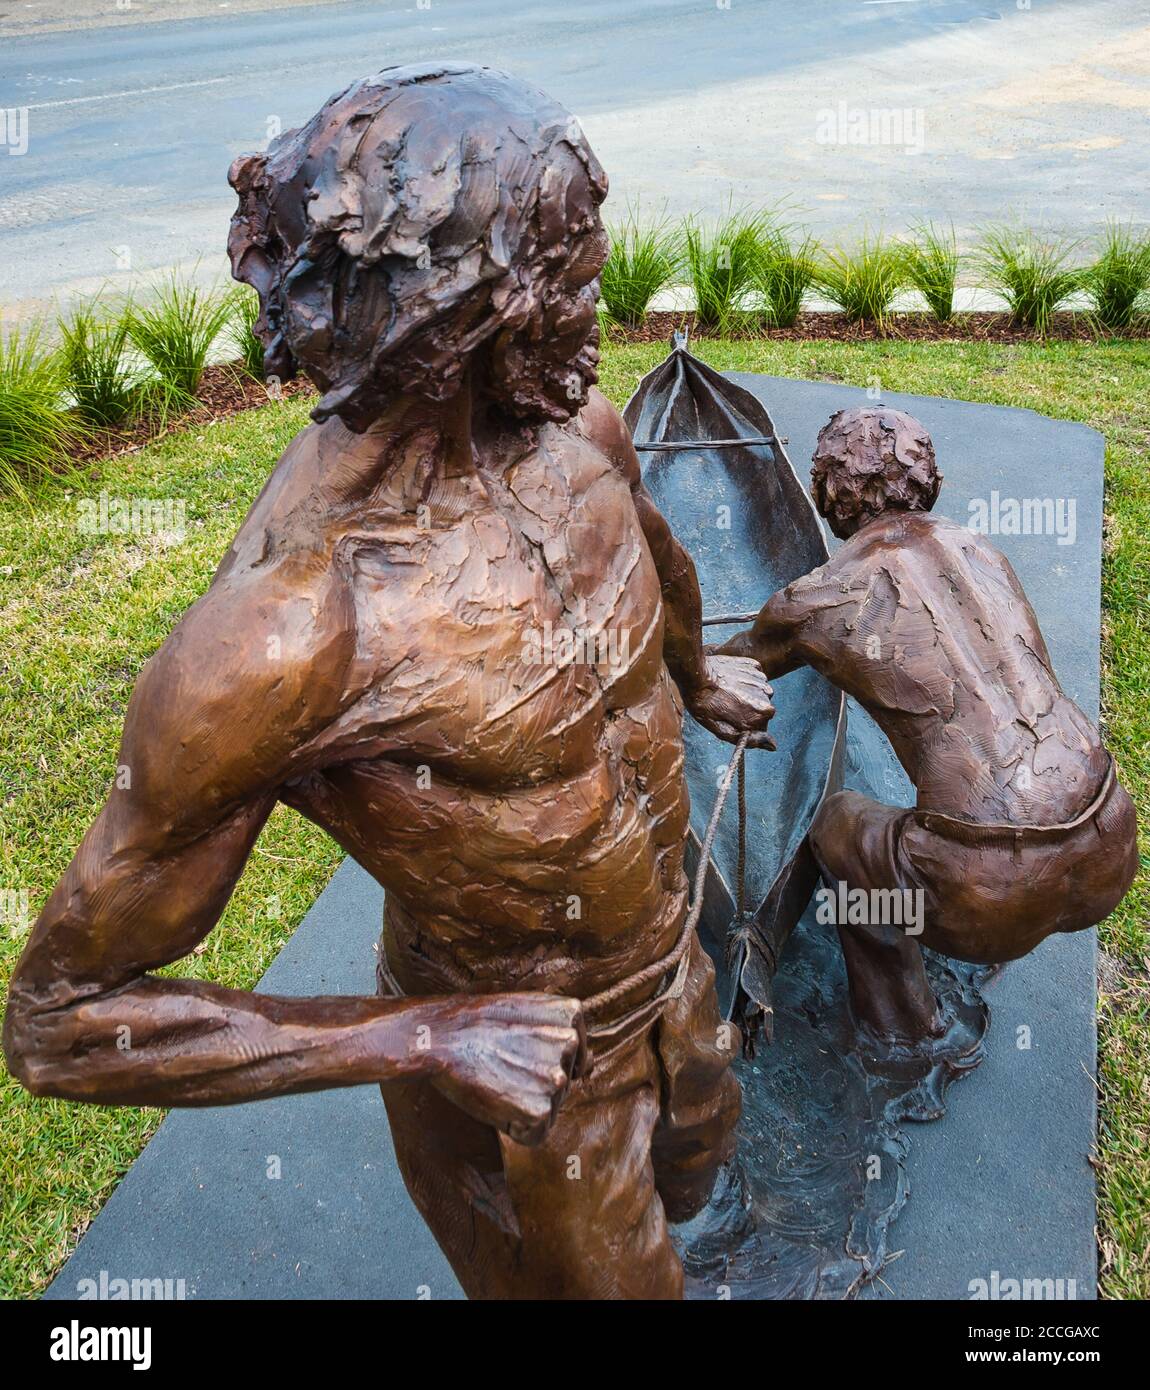 Bronzestatuen von zwei indigenen Helden porträtierten Menschen, die ein Rindenkanu während der Überschwemmungen von 1852 in NSW Australien handhabten, wo sie 68 Menschen retteten. Stockfoto